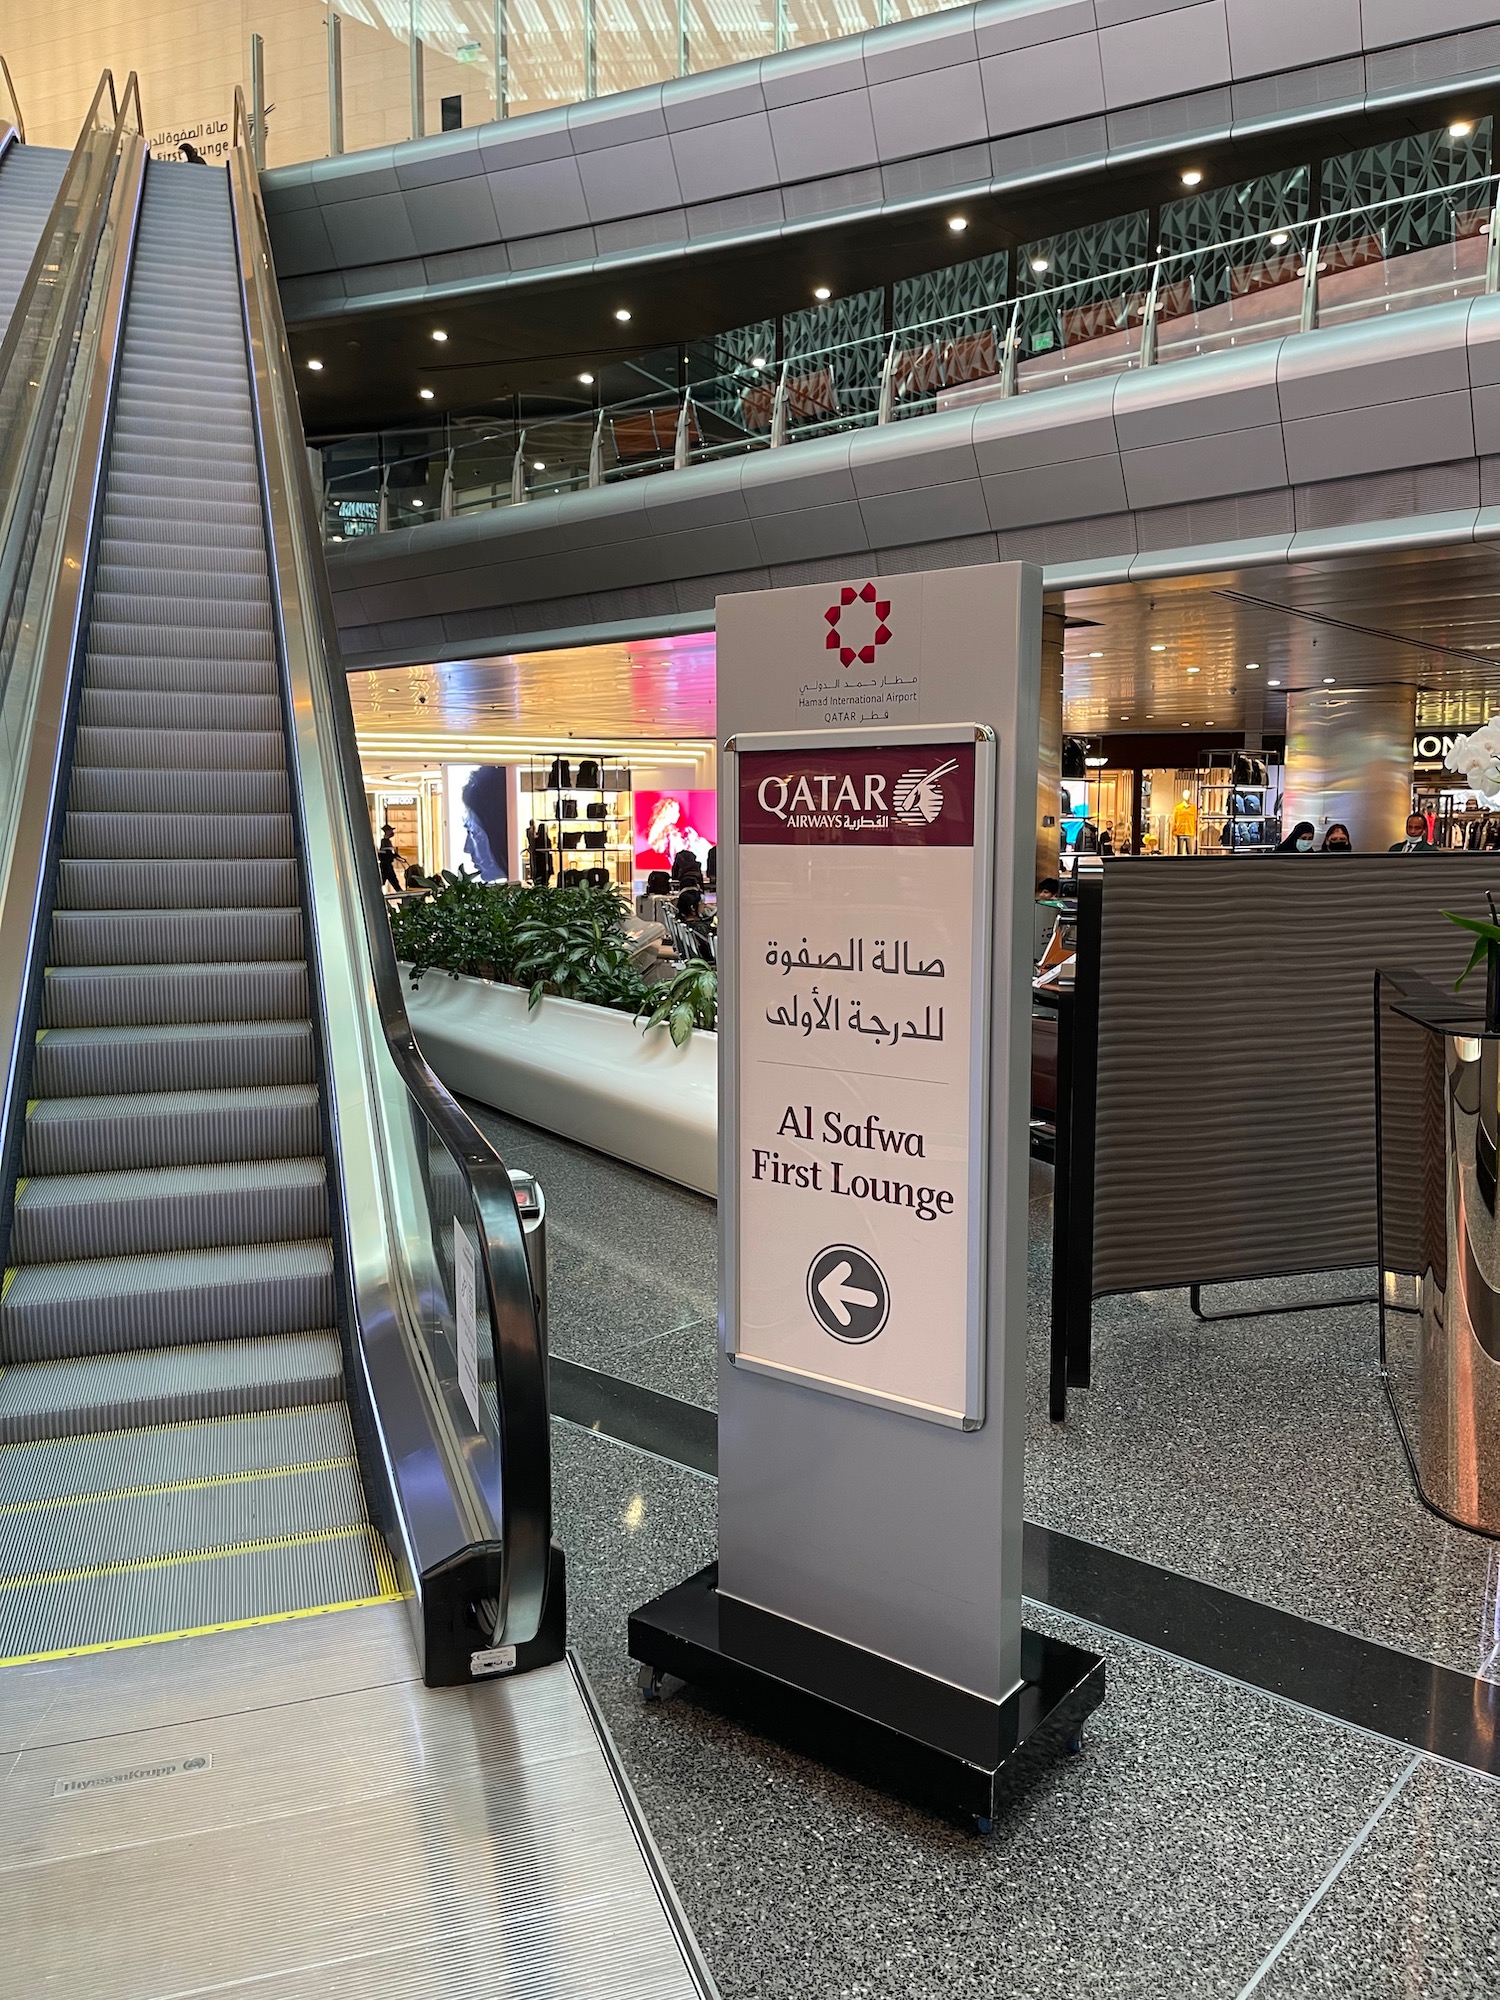 Qatar Airways Lounges